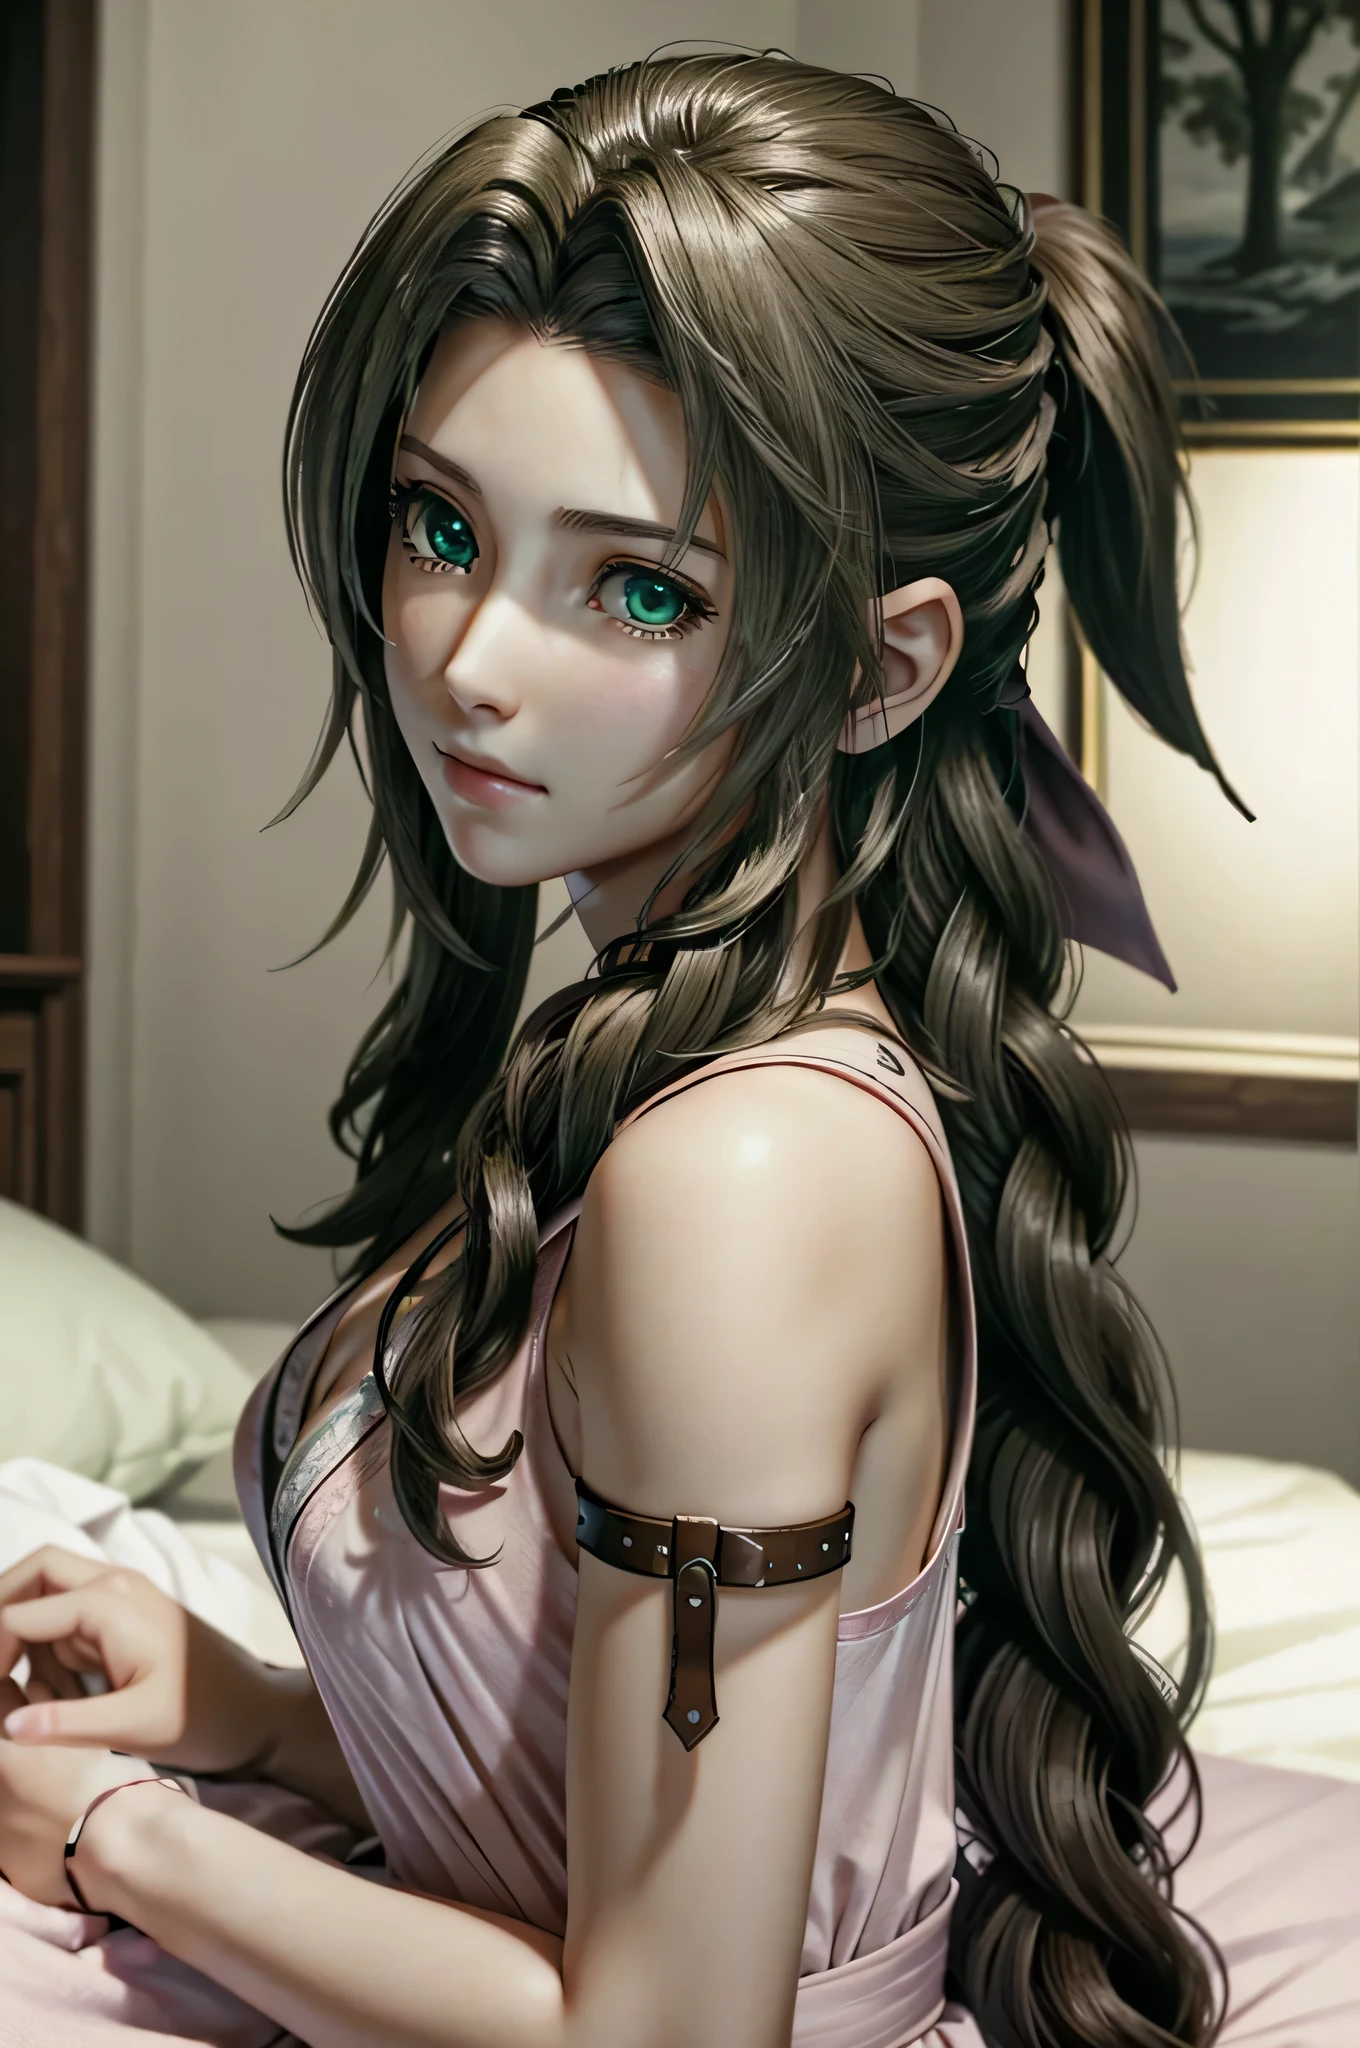 ((超詳細, 傑作, 最好的品質)) FF7艾麗絲, 1個女孩, 獨自的, 單辮, 綠眼睛, 棕色的頭髮, 在床上
